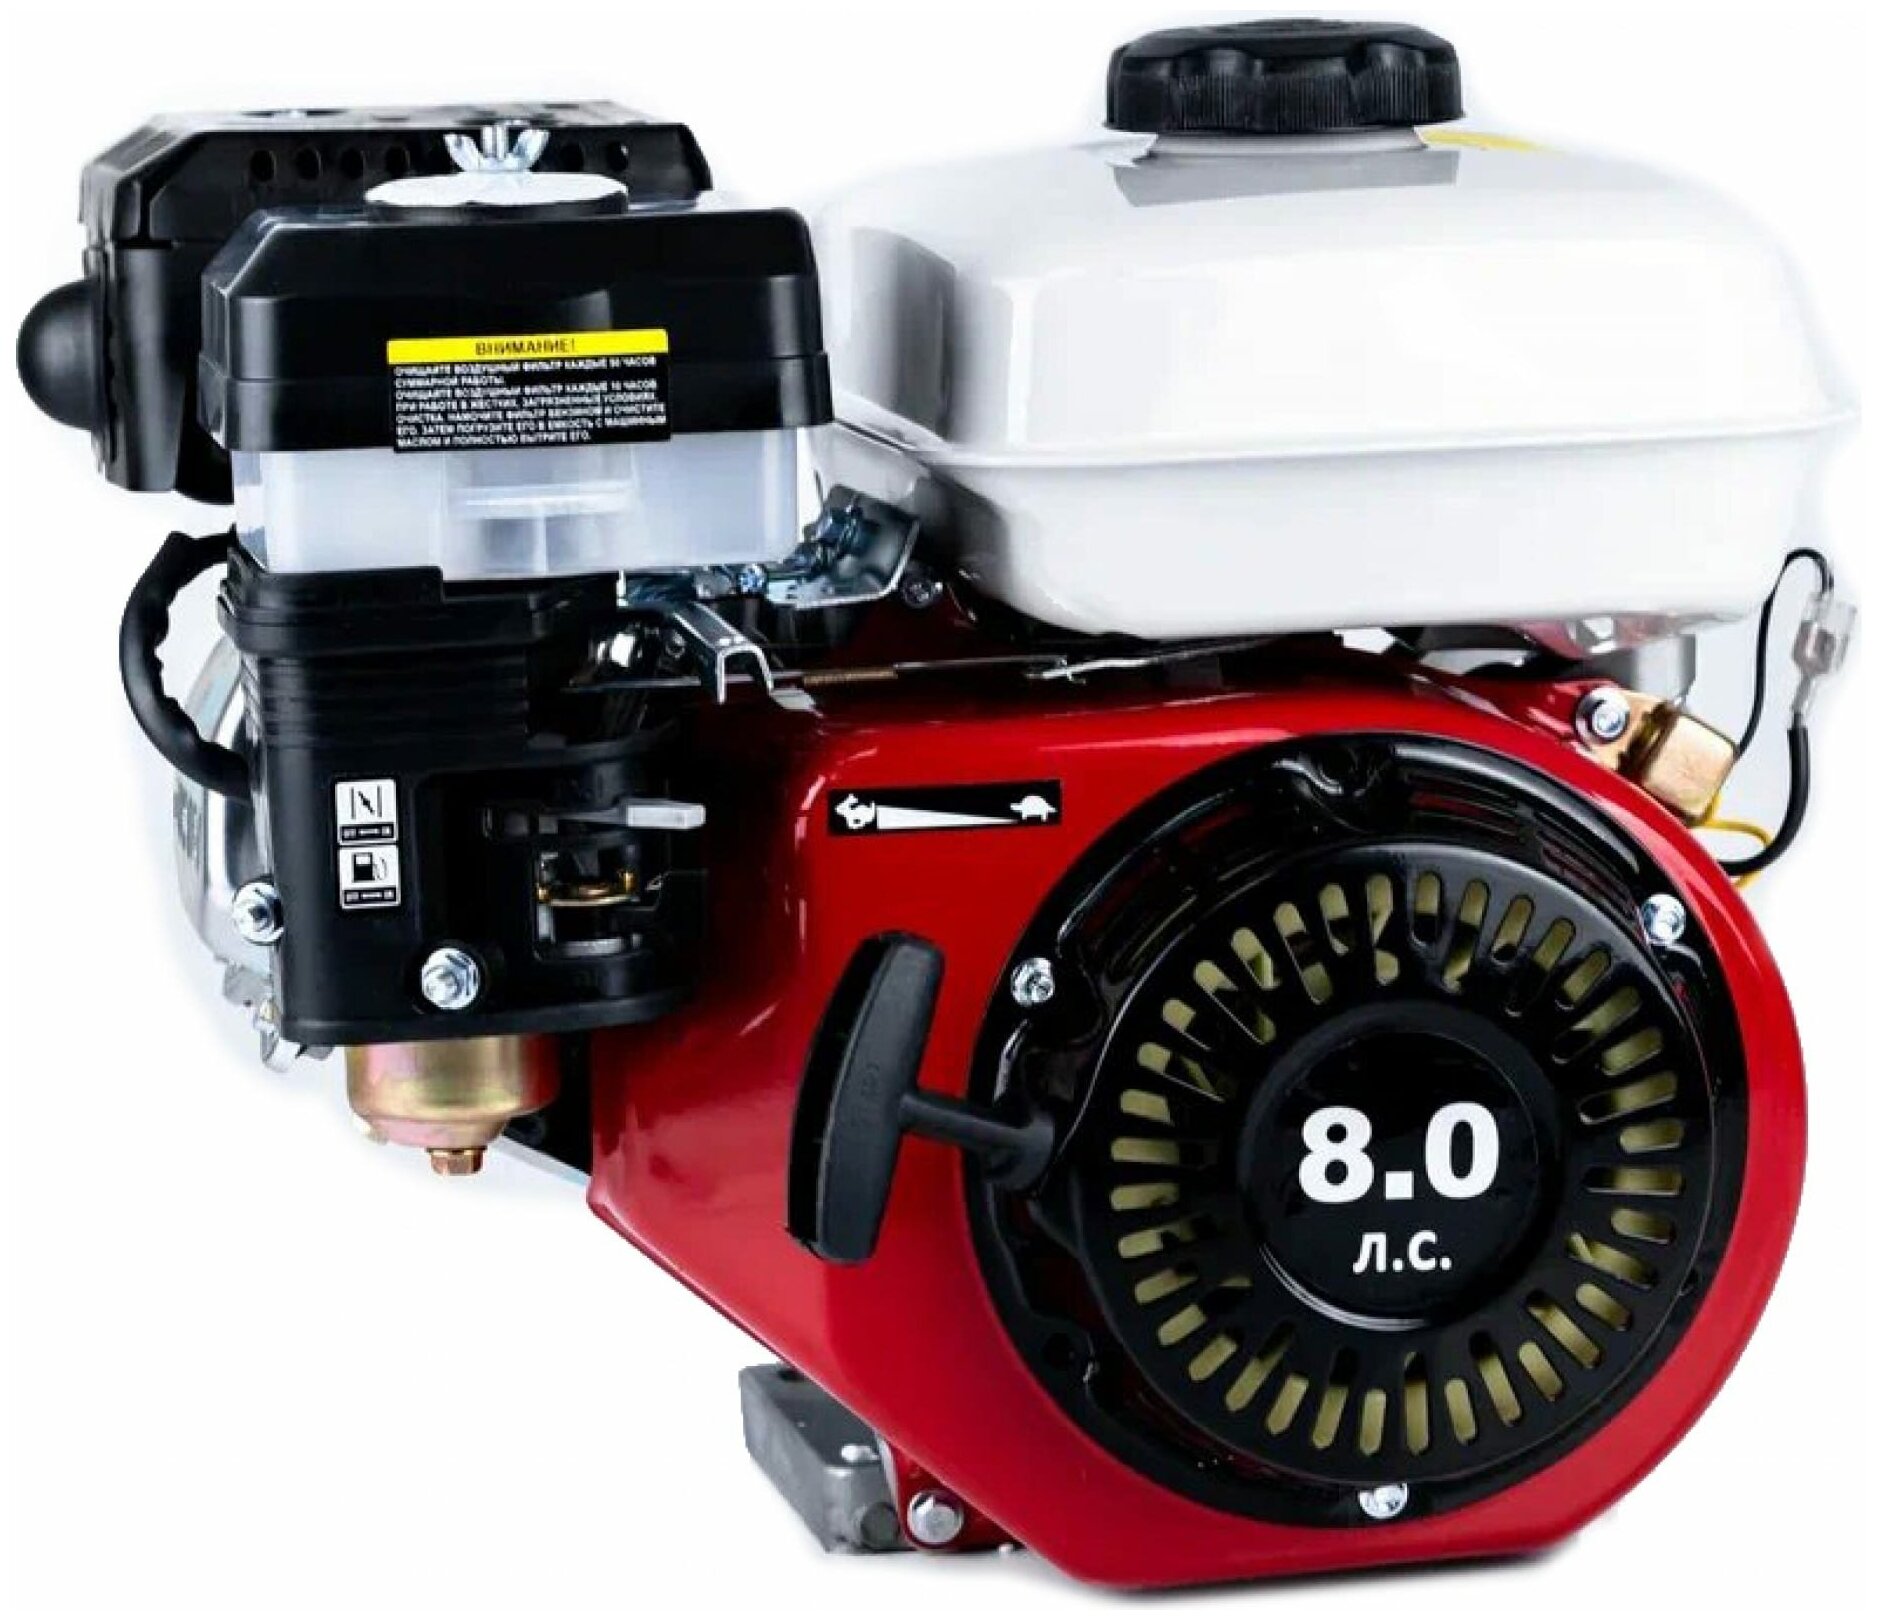 WorkMaster Бензиновый двигатель 8,0 л. с, шлицы, вал 25 мм ДБШ-8,0